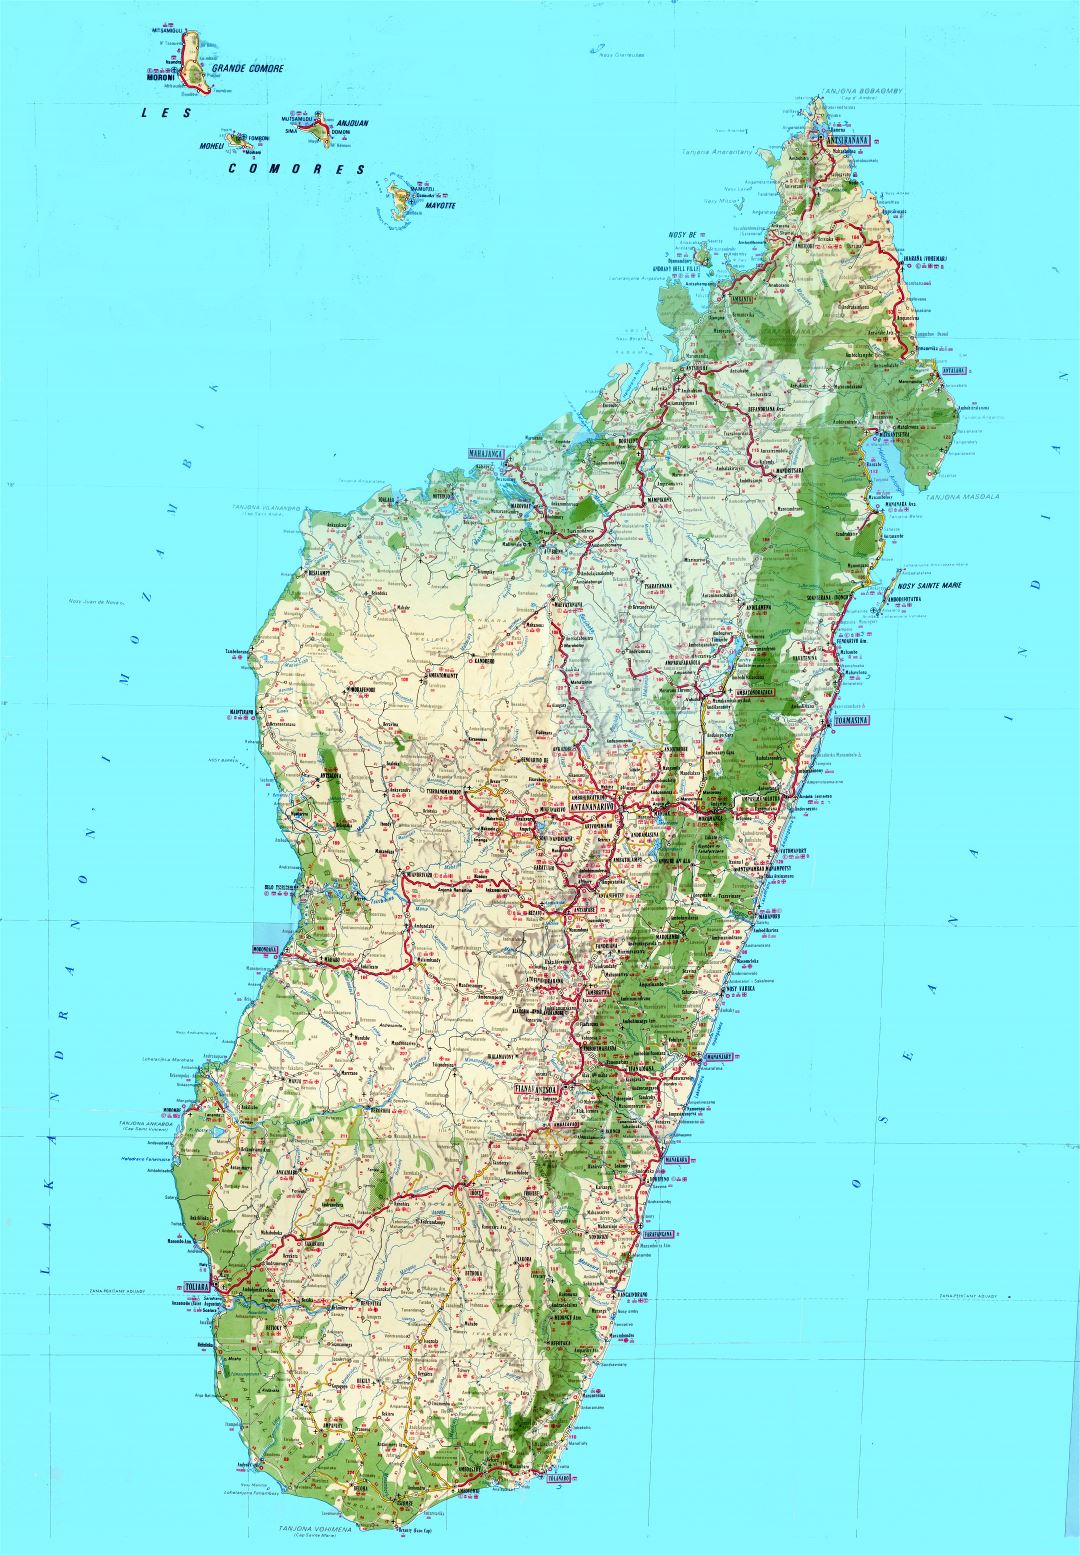 Крупномасштабная детальная топографическая и туристическая карта Мадагаскара со всеми дорогами, городами, деревнями, аэропортами и другими пометками